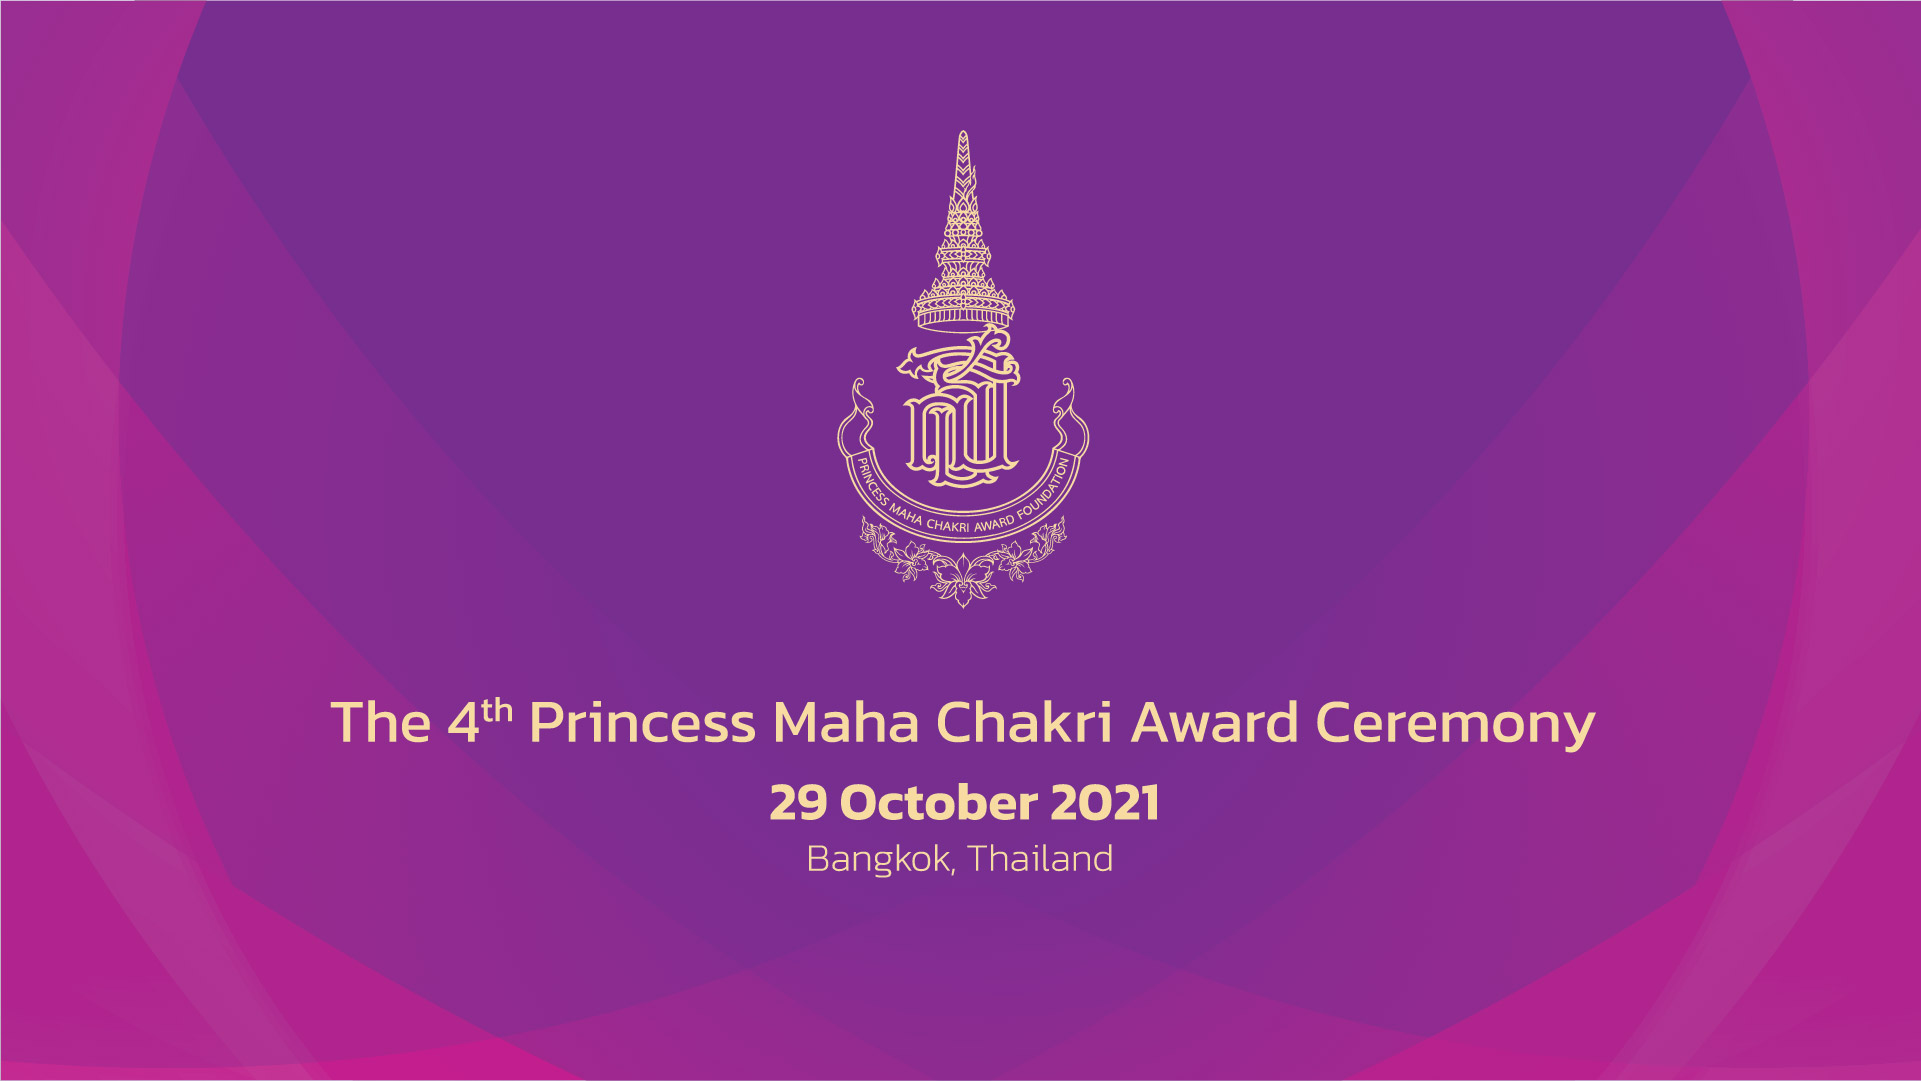 The 4th Princess Maha Chakri Award Ceremony 2021